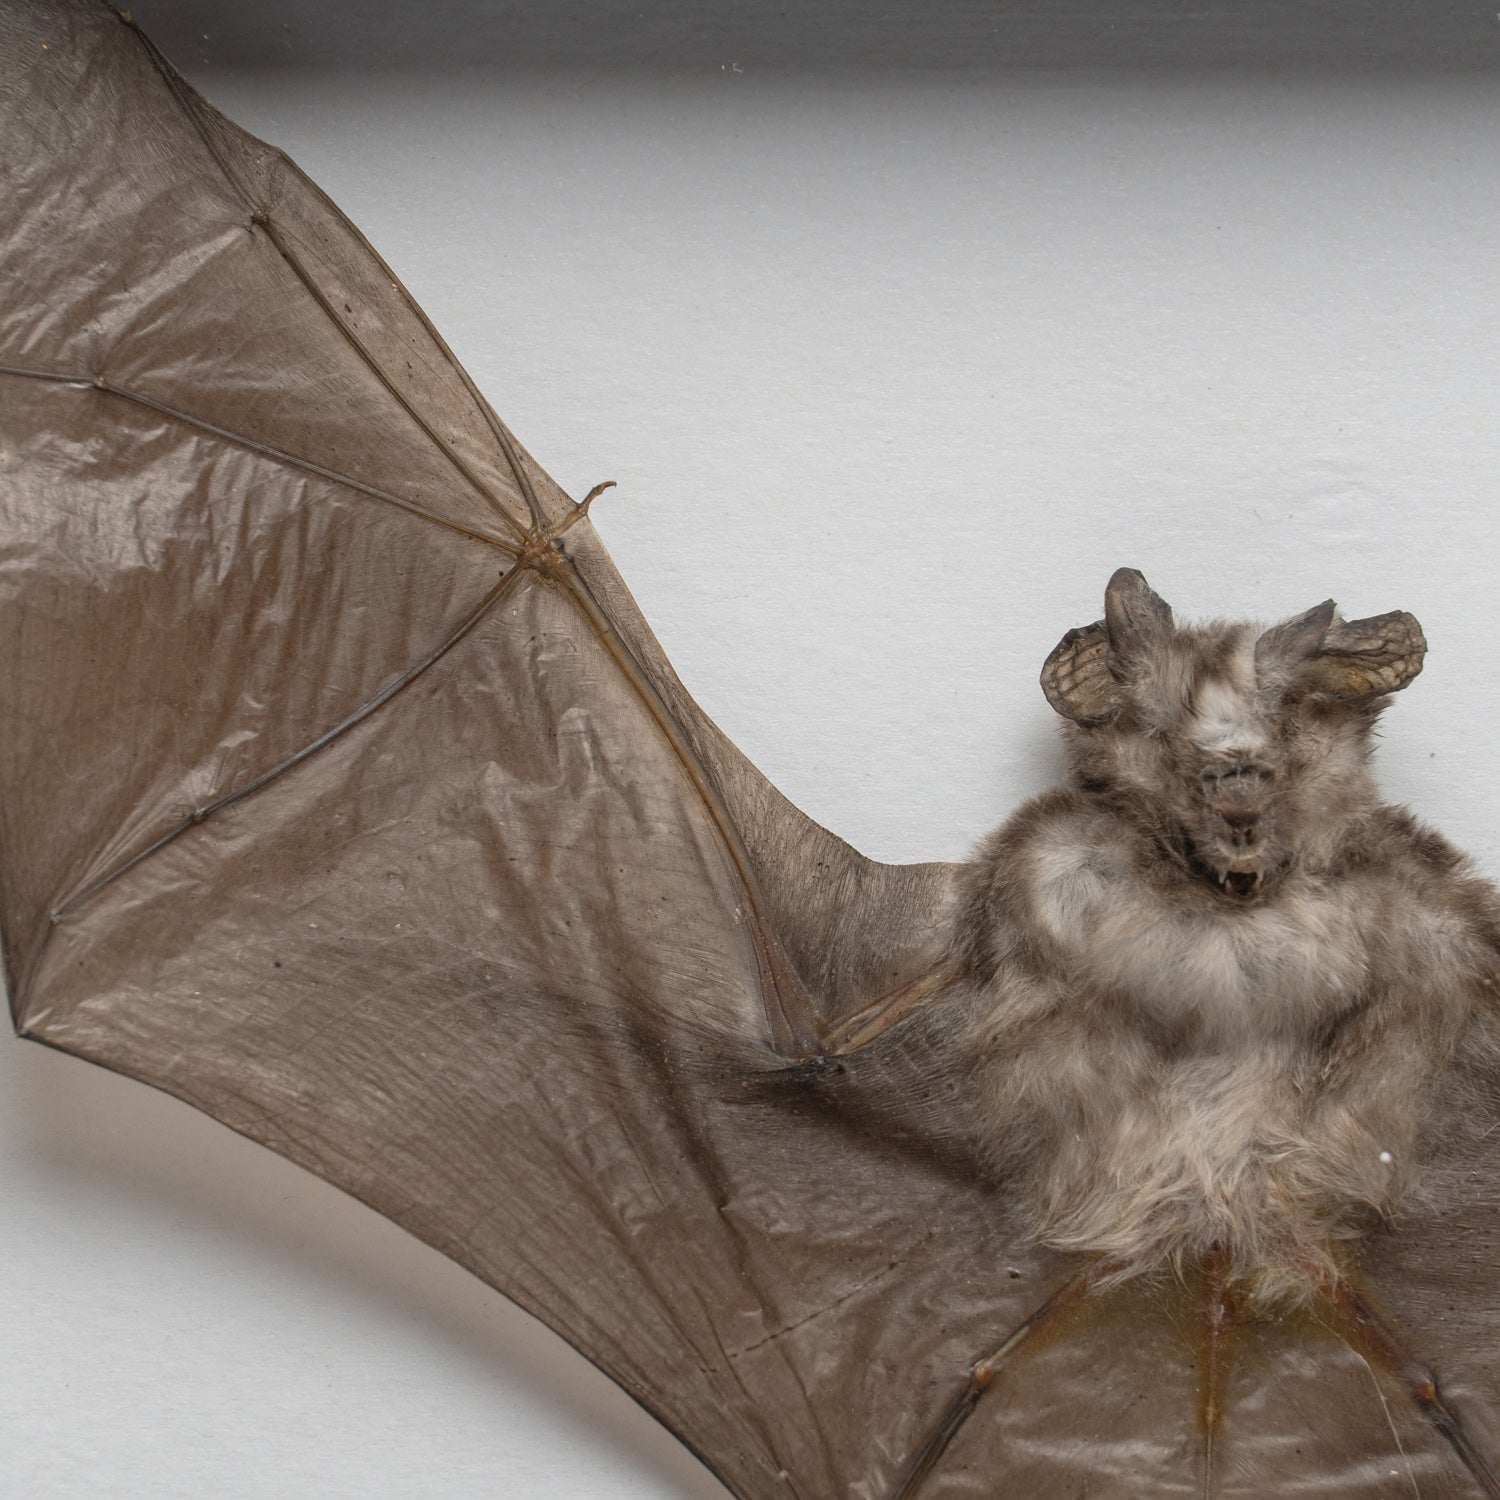 Genuine Rhinolphus Lepidus, The Horshoe Bat, in a Display Frame